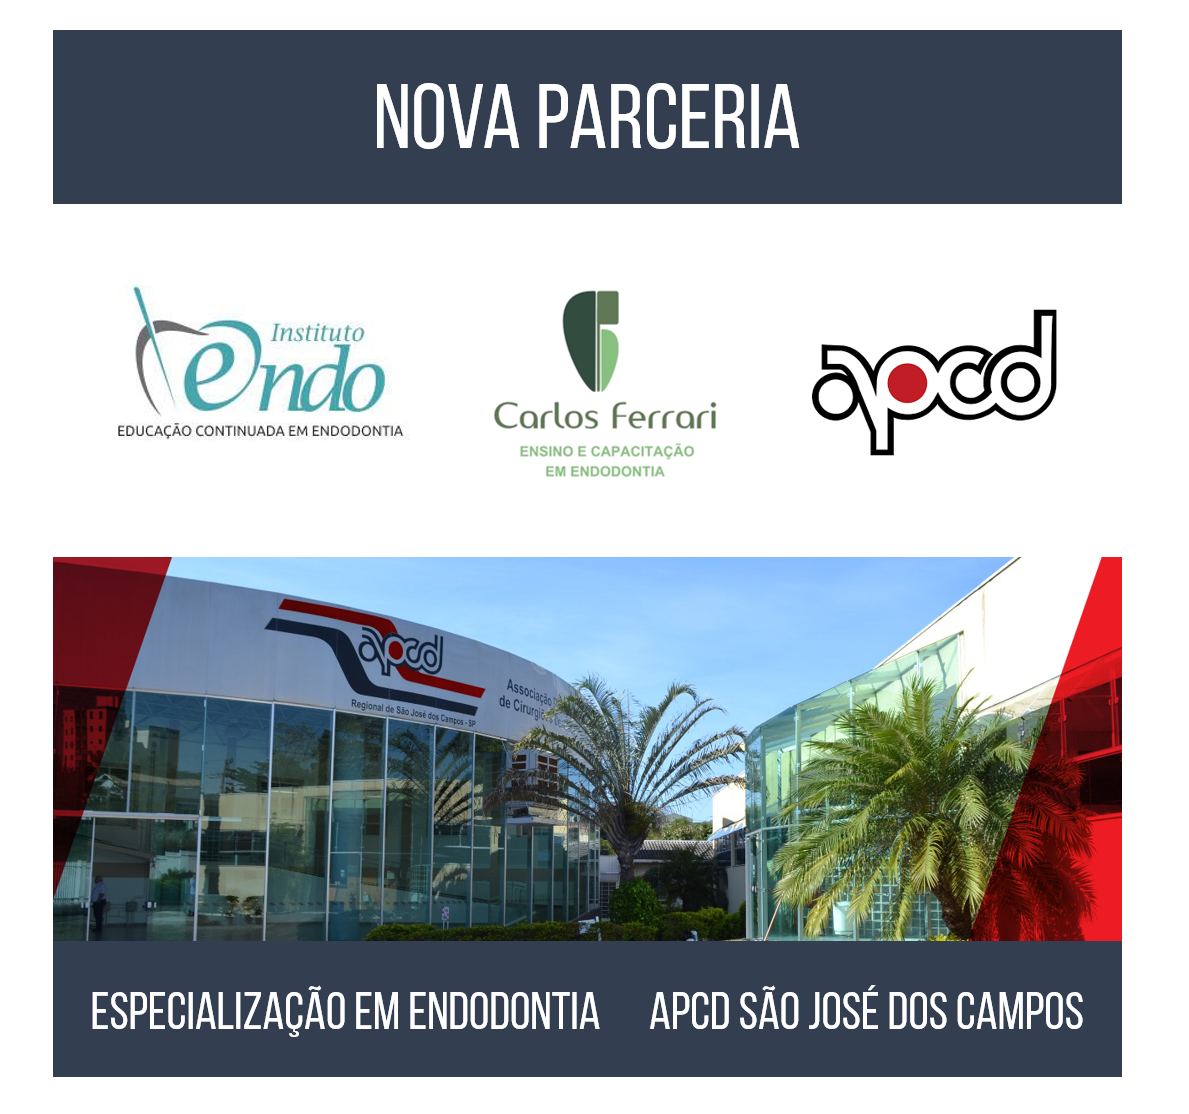 You are currently viewing Nova parceria APCD São José dos Campos.